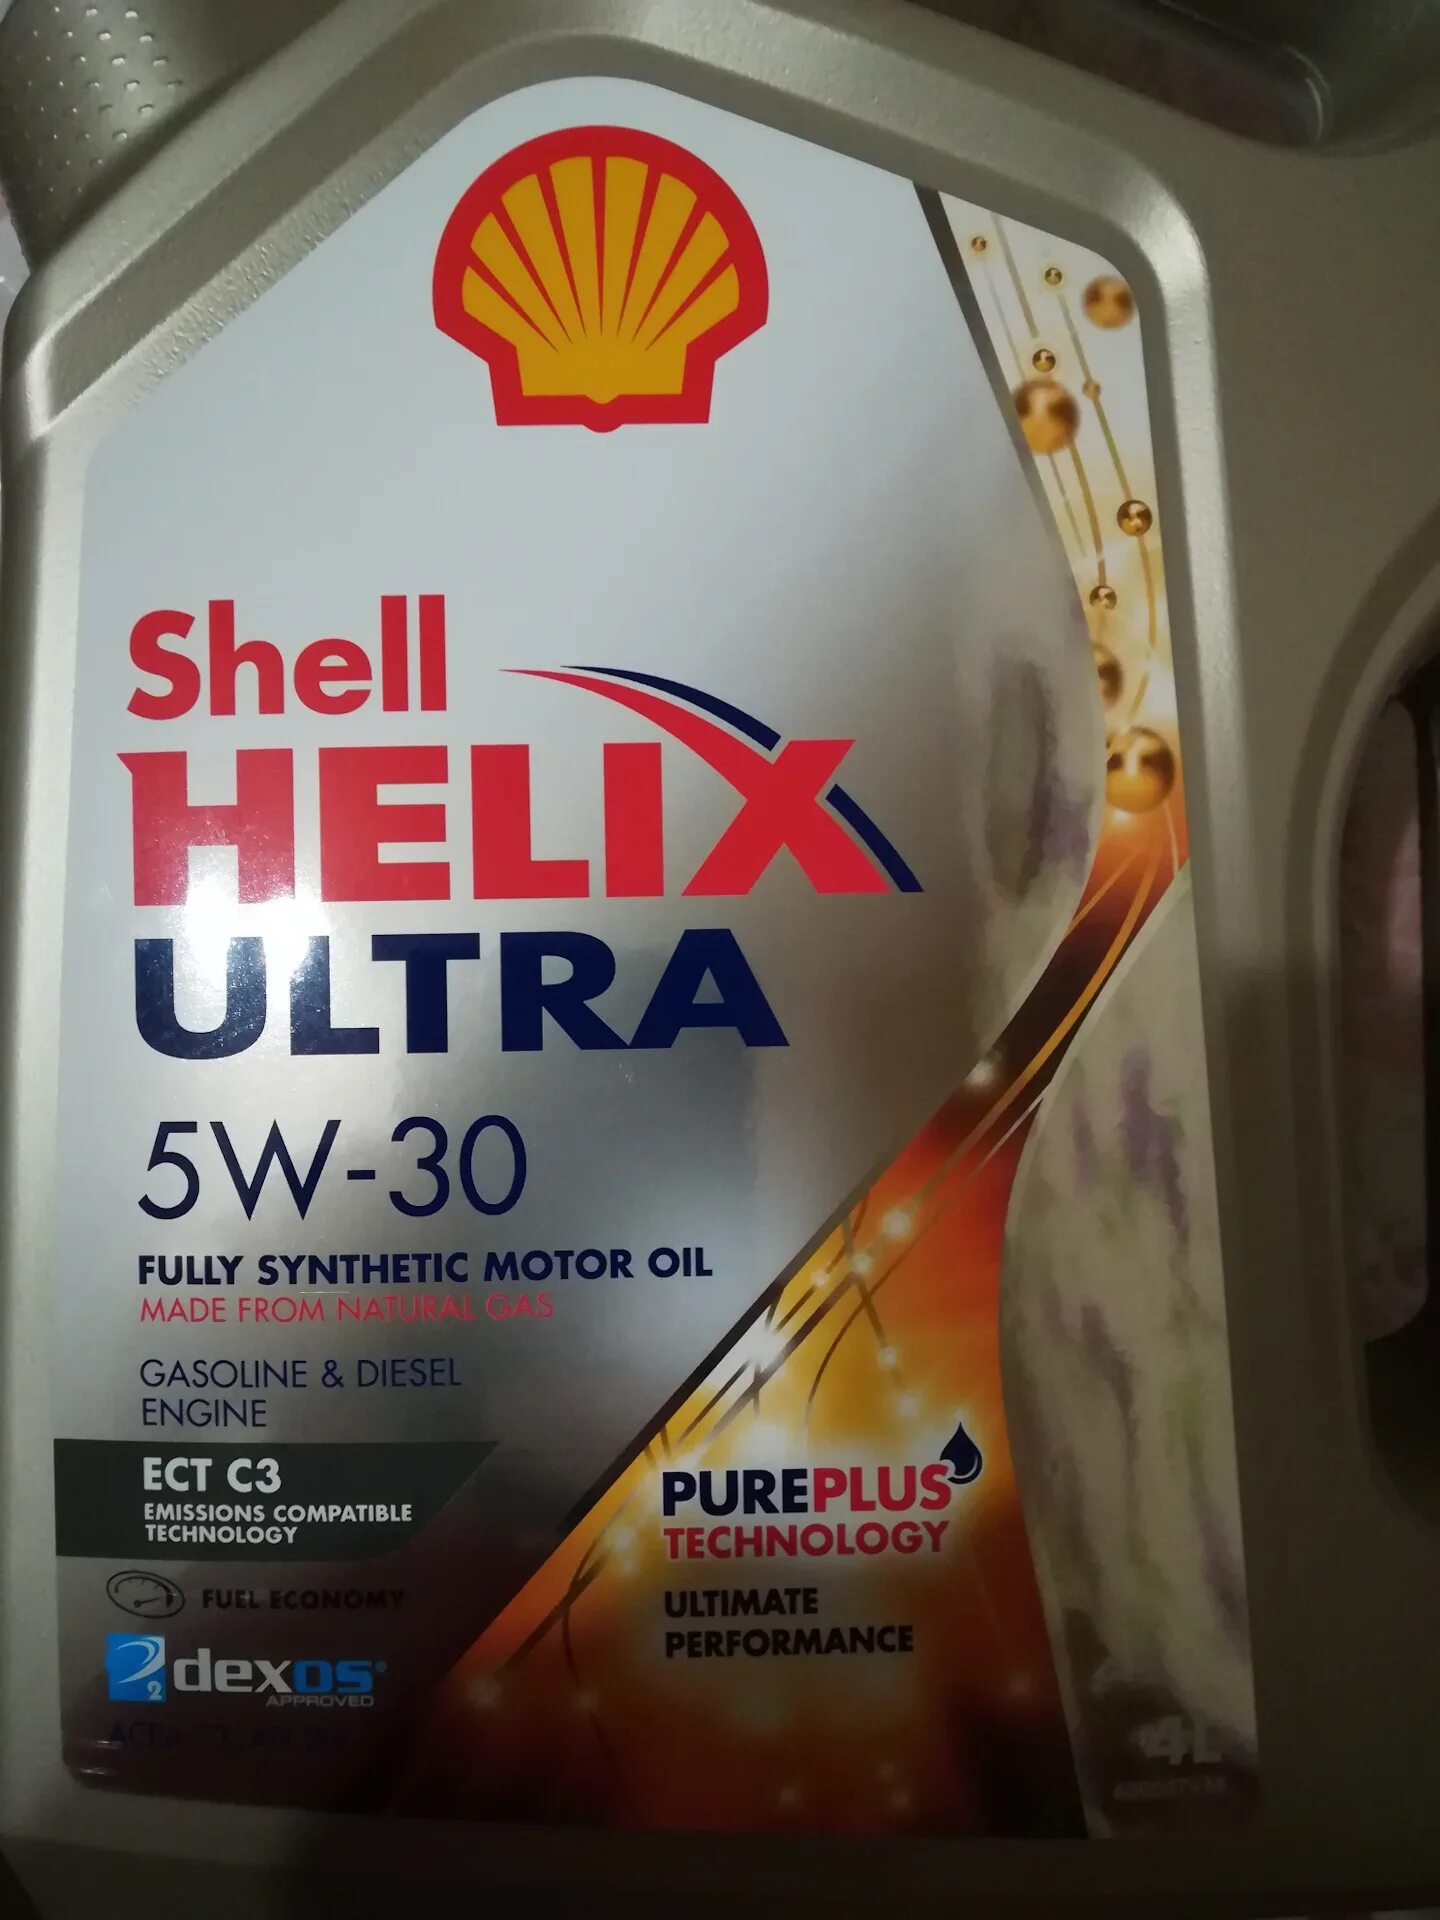 Shell 5w30 Hyundai. Масло Шелл Хеликс ультра 5w30 для Хендай Солярис. Shell Helix Ultra 5w30 в Хендай Солярис. Шелл ультра 5w30 Хундай.